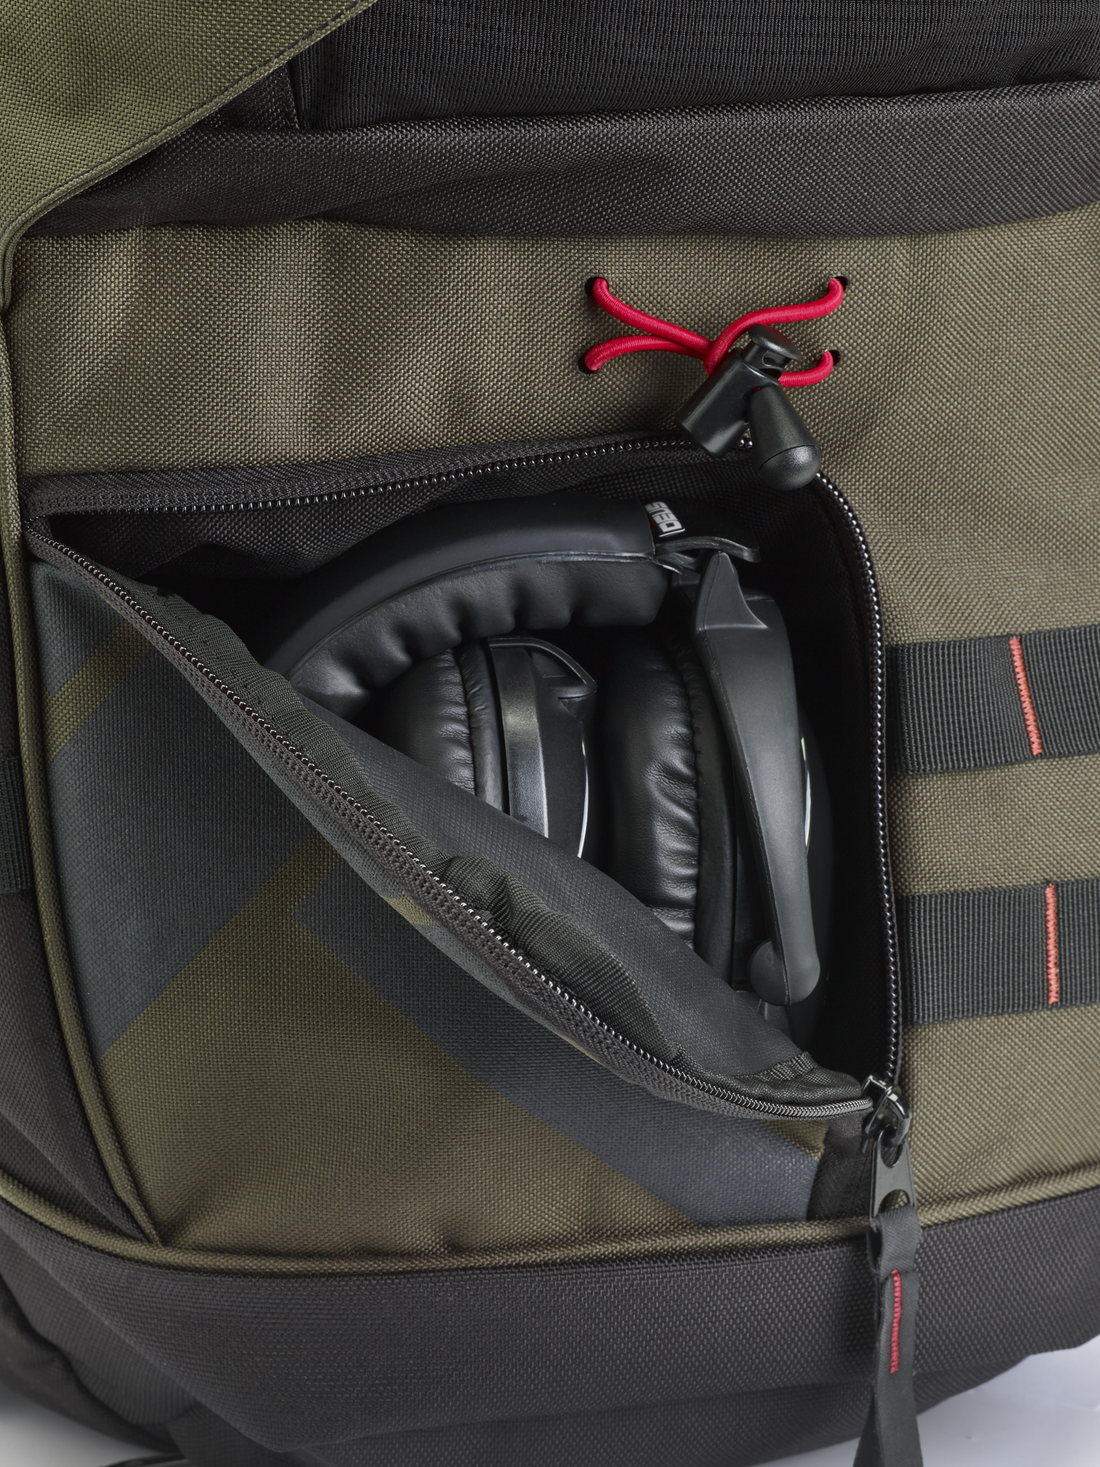 XP Metal Detector Backpack 280 headphone storage pocket